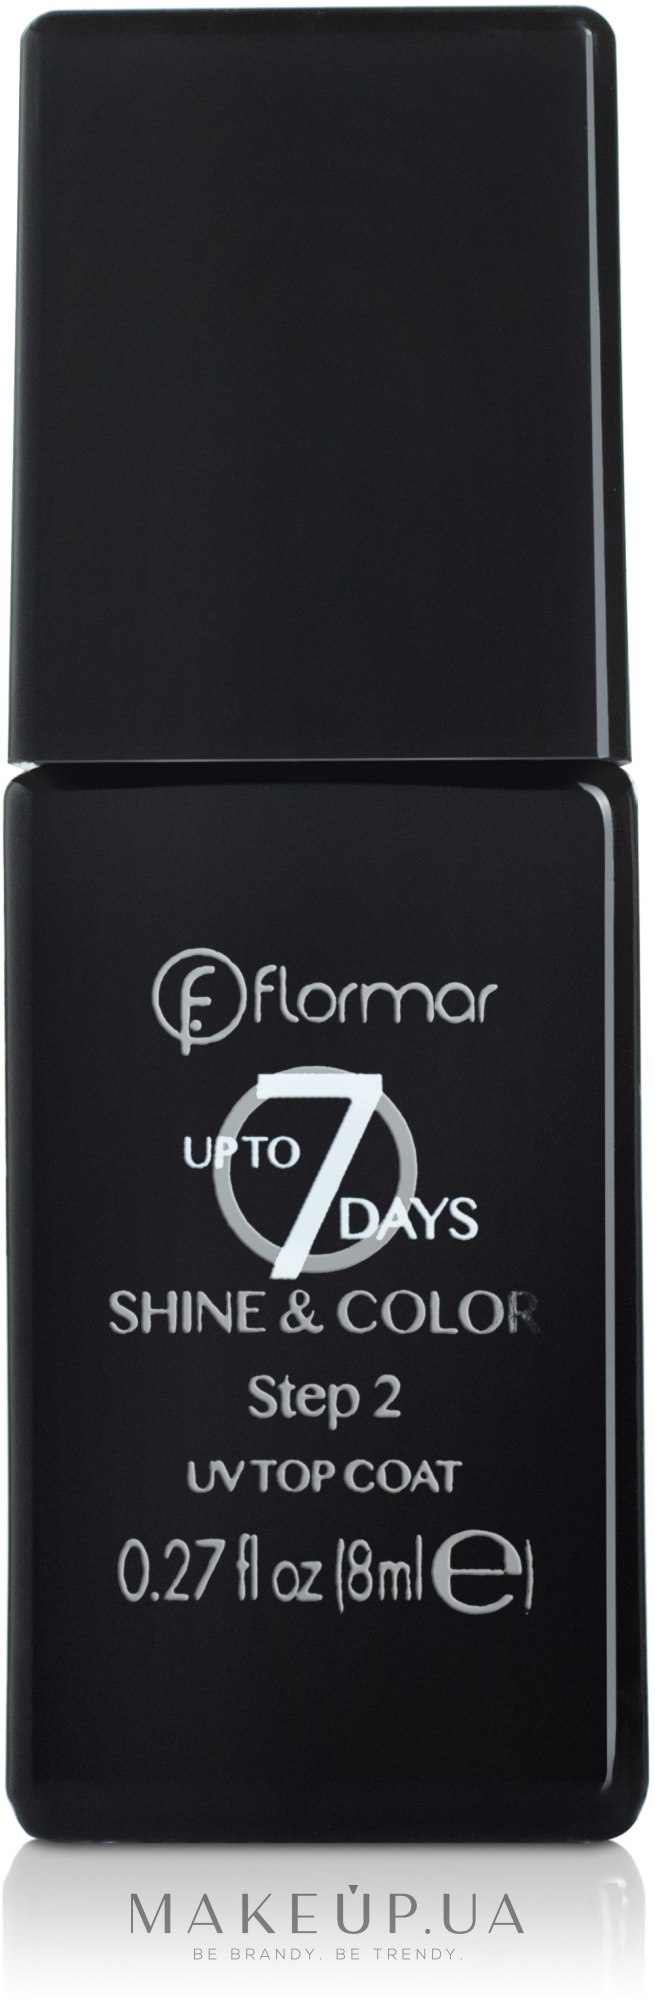 Flormar Upto 7 Days Shine Color Step 2 Uv Top Coat Zakrepitel Dlya Laka Kupit Po Luchshej Cene V Ukraine Makeup Ua